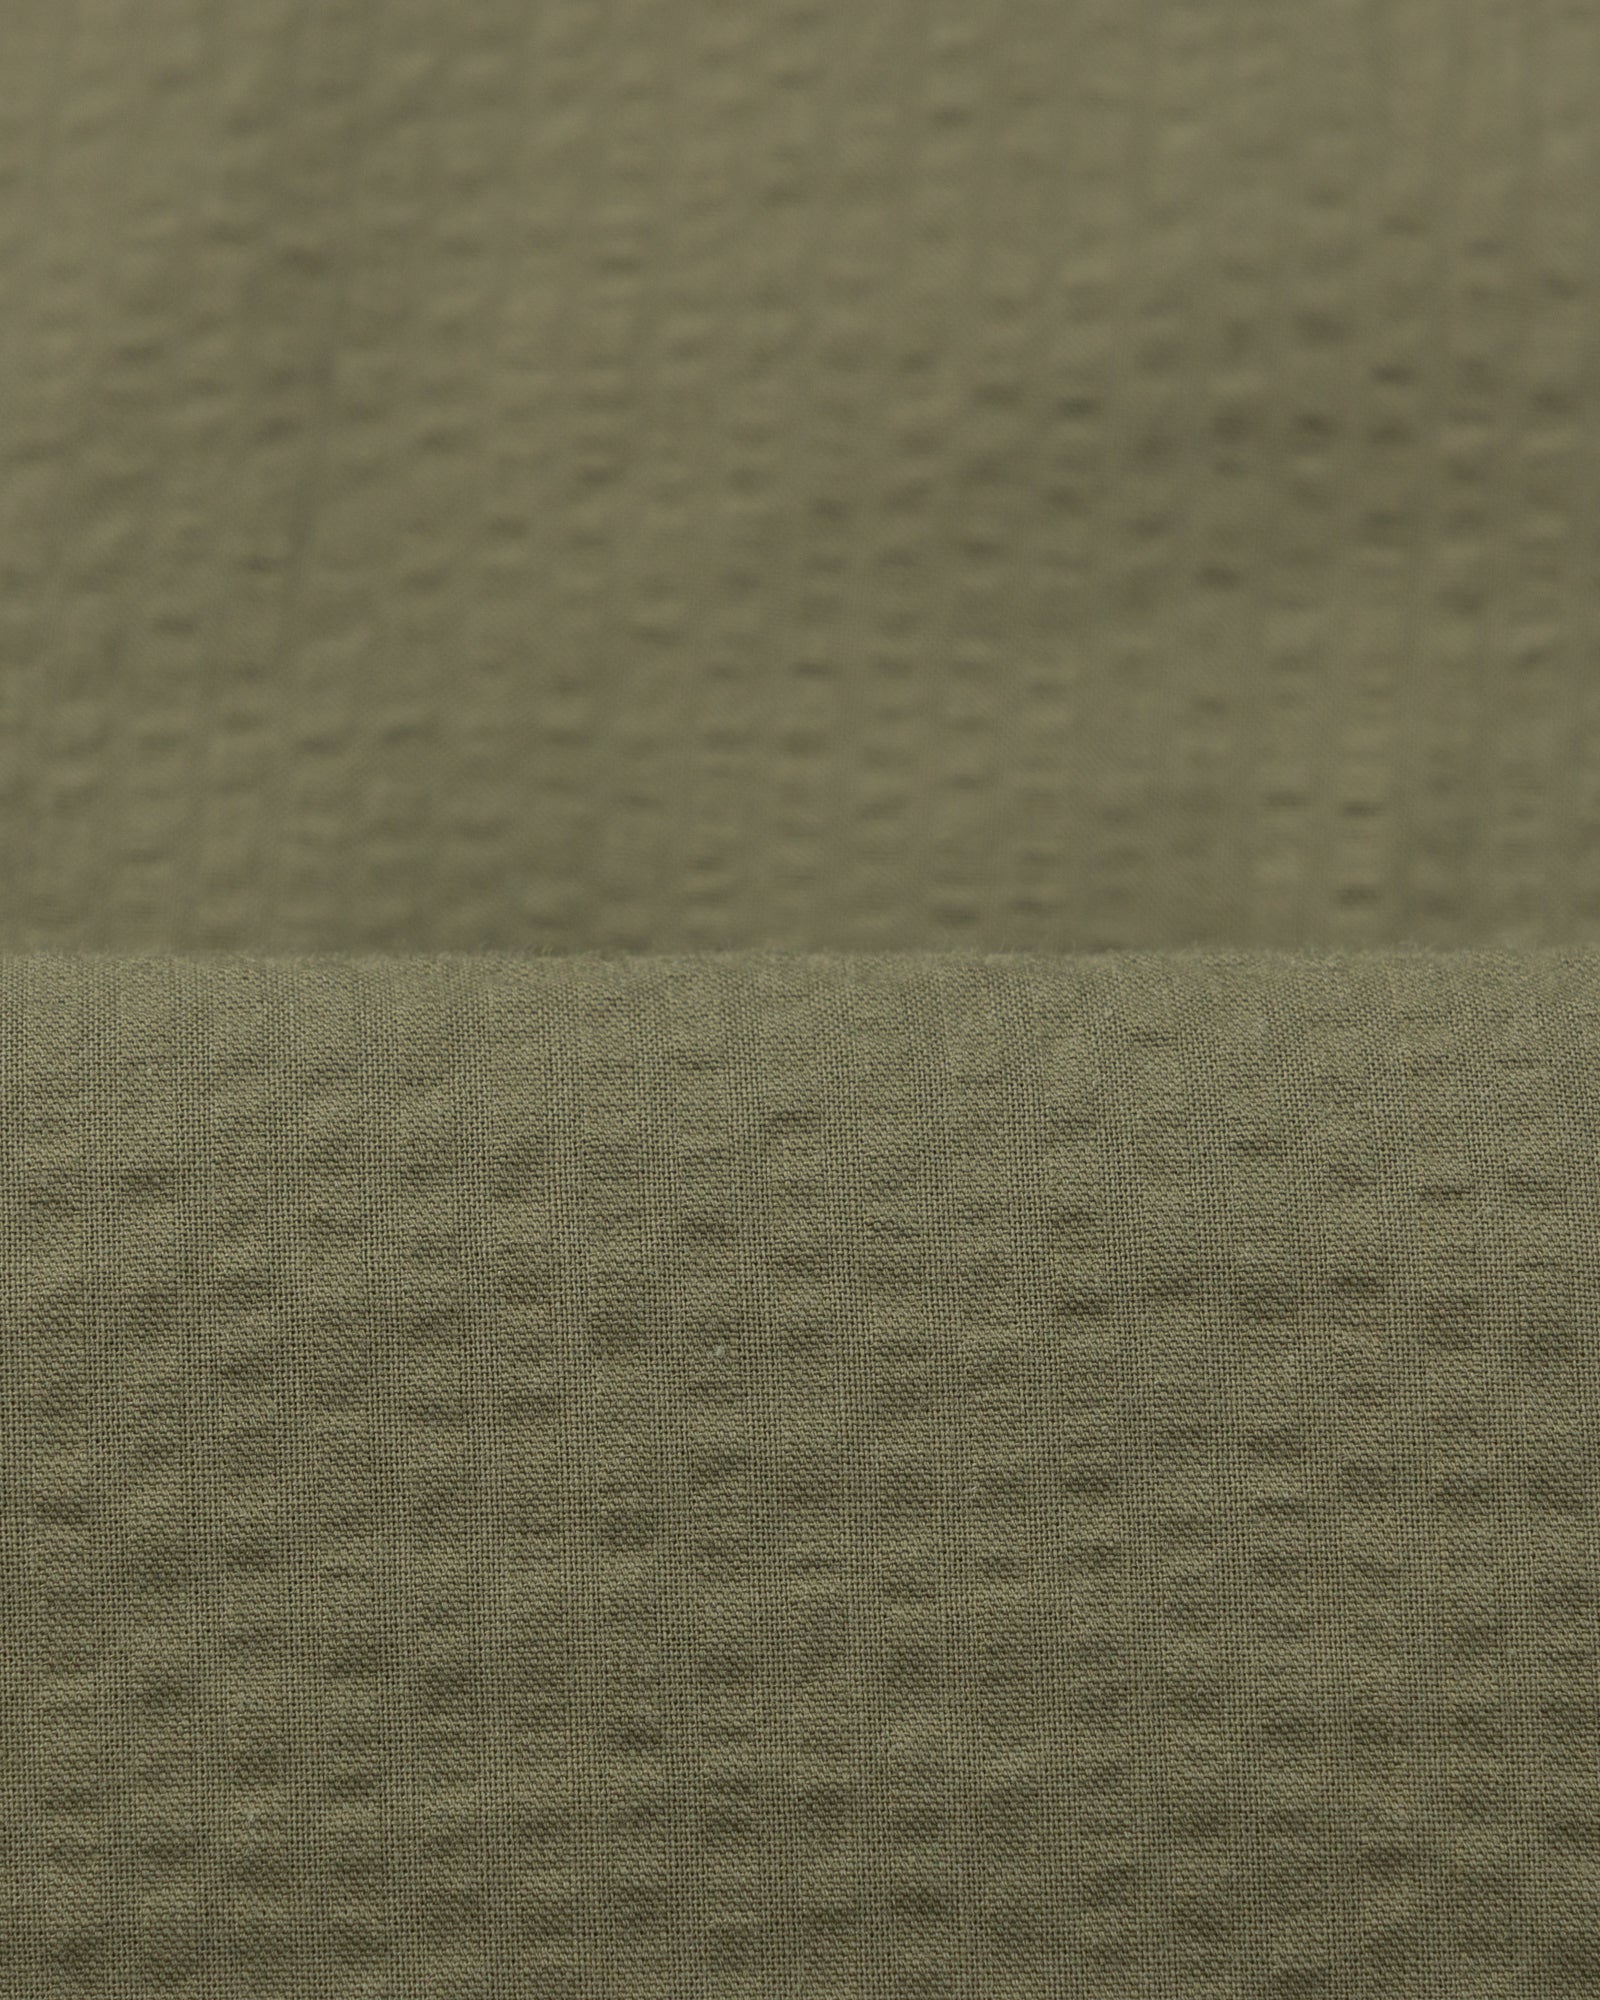 Button Down Collar Shirt - Olive Green Cotton Seersucker